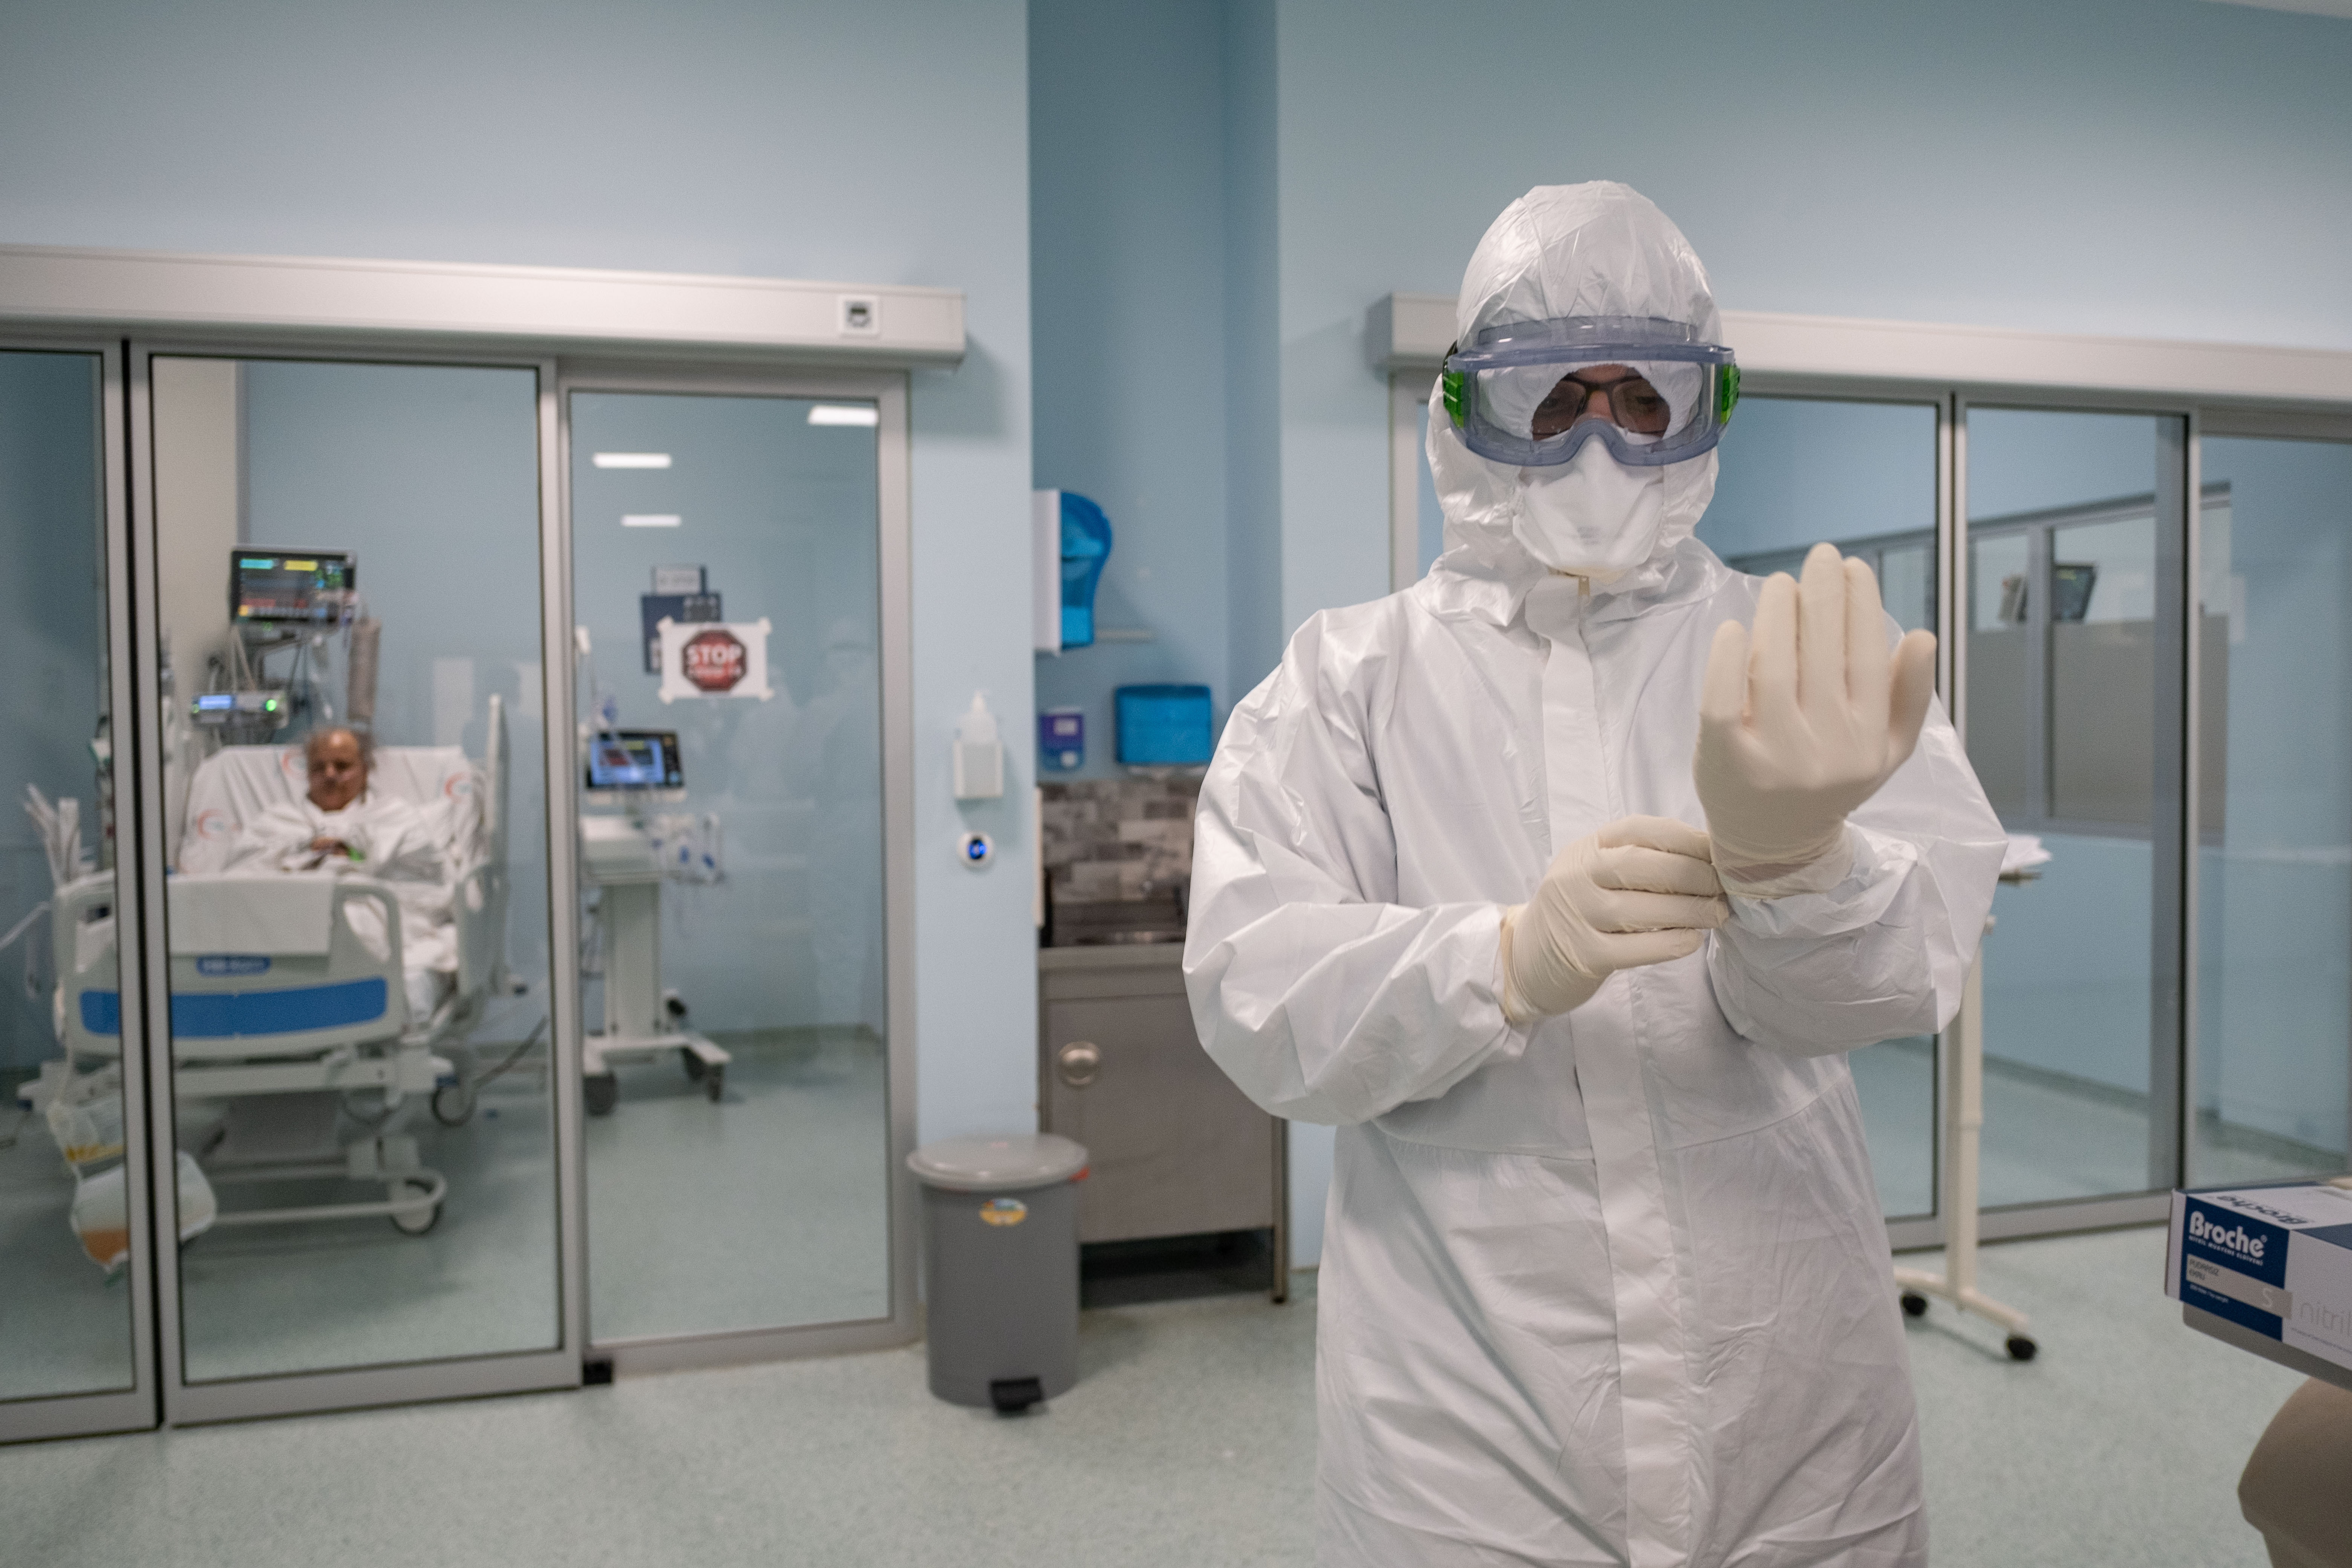 Realitatea cruntă din Spitalul Judeţean Galaţi: Un singur epidemiolog la o unitate sanitară cu peste 1200 de paturi